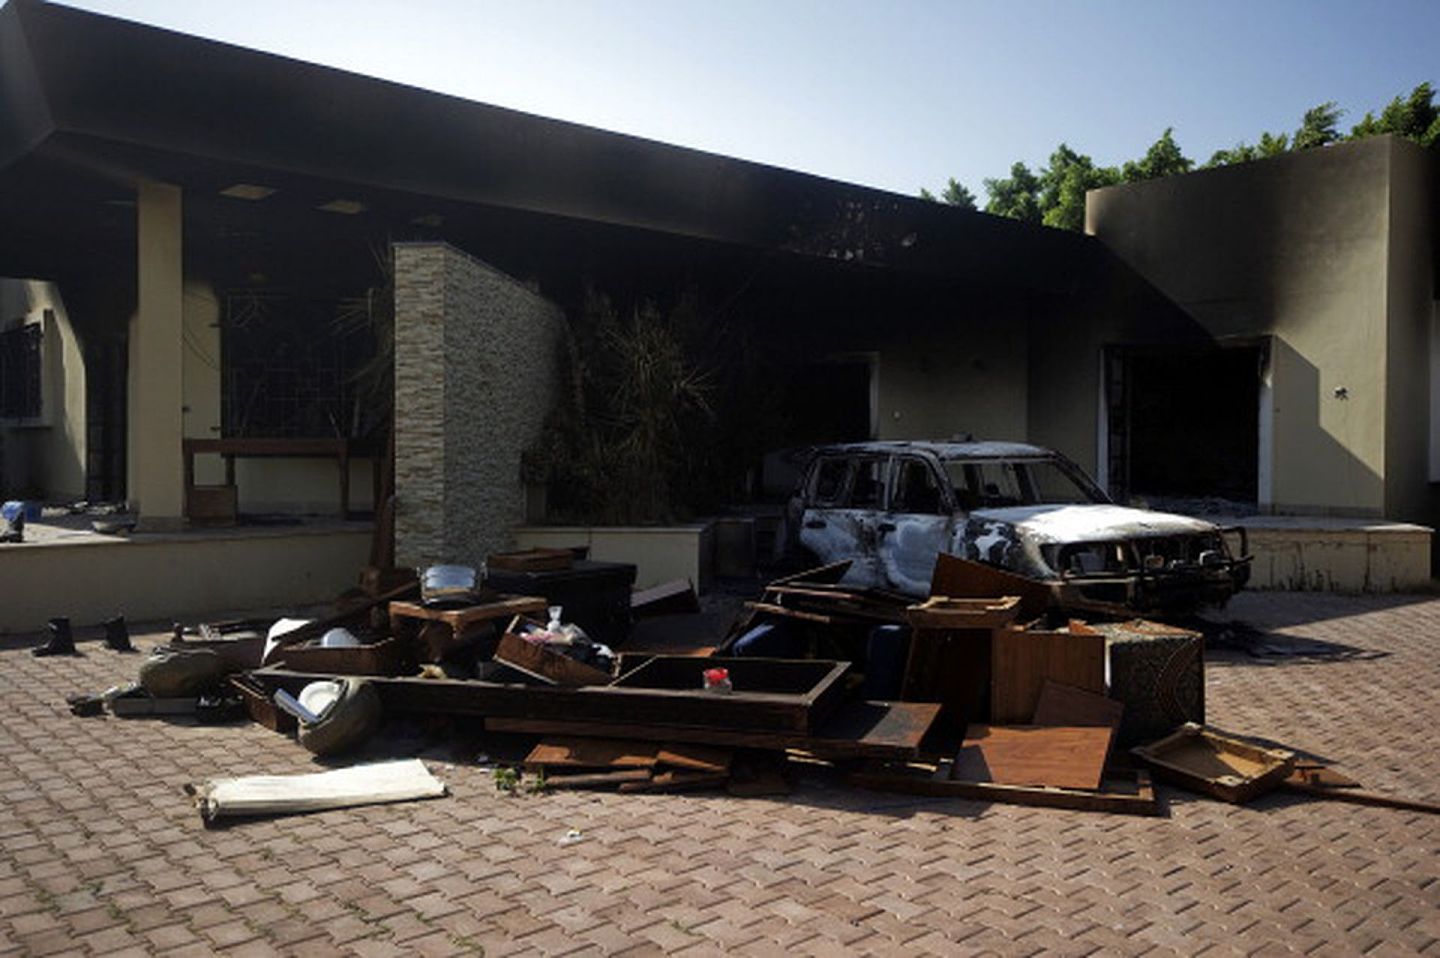 2012年9月11日，美国驻利比亚班加西领事馆遭炸弹袭击，造成包括总领事史蒂文斯（Chris Stevens）在内的四名领事馆工作人员死亡。图为遭袭后的领事馆废墟。（Getty Images）